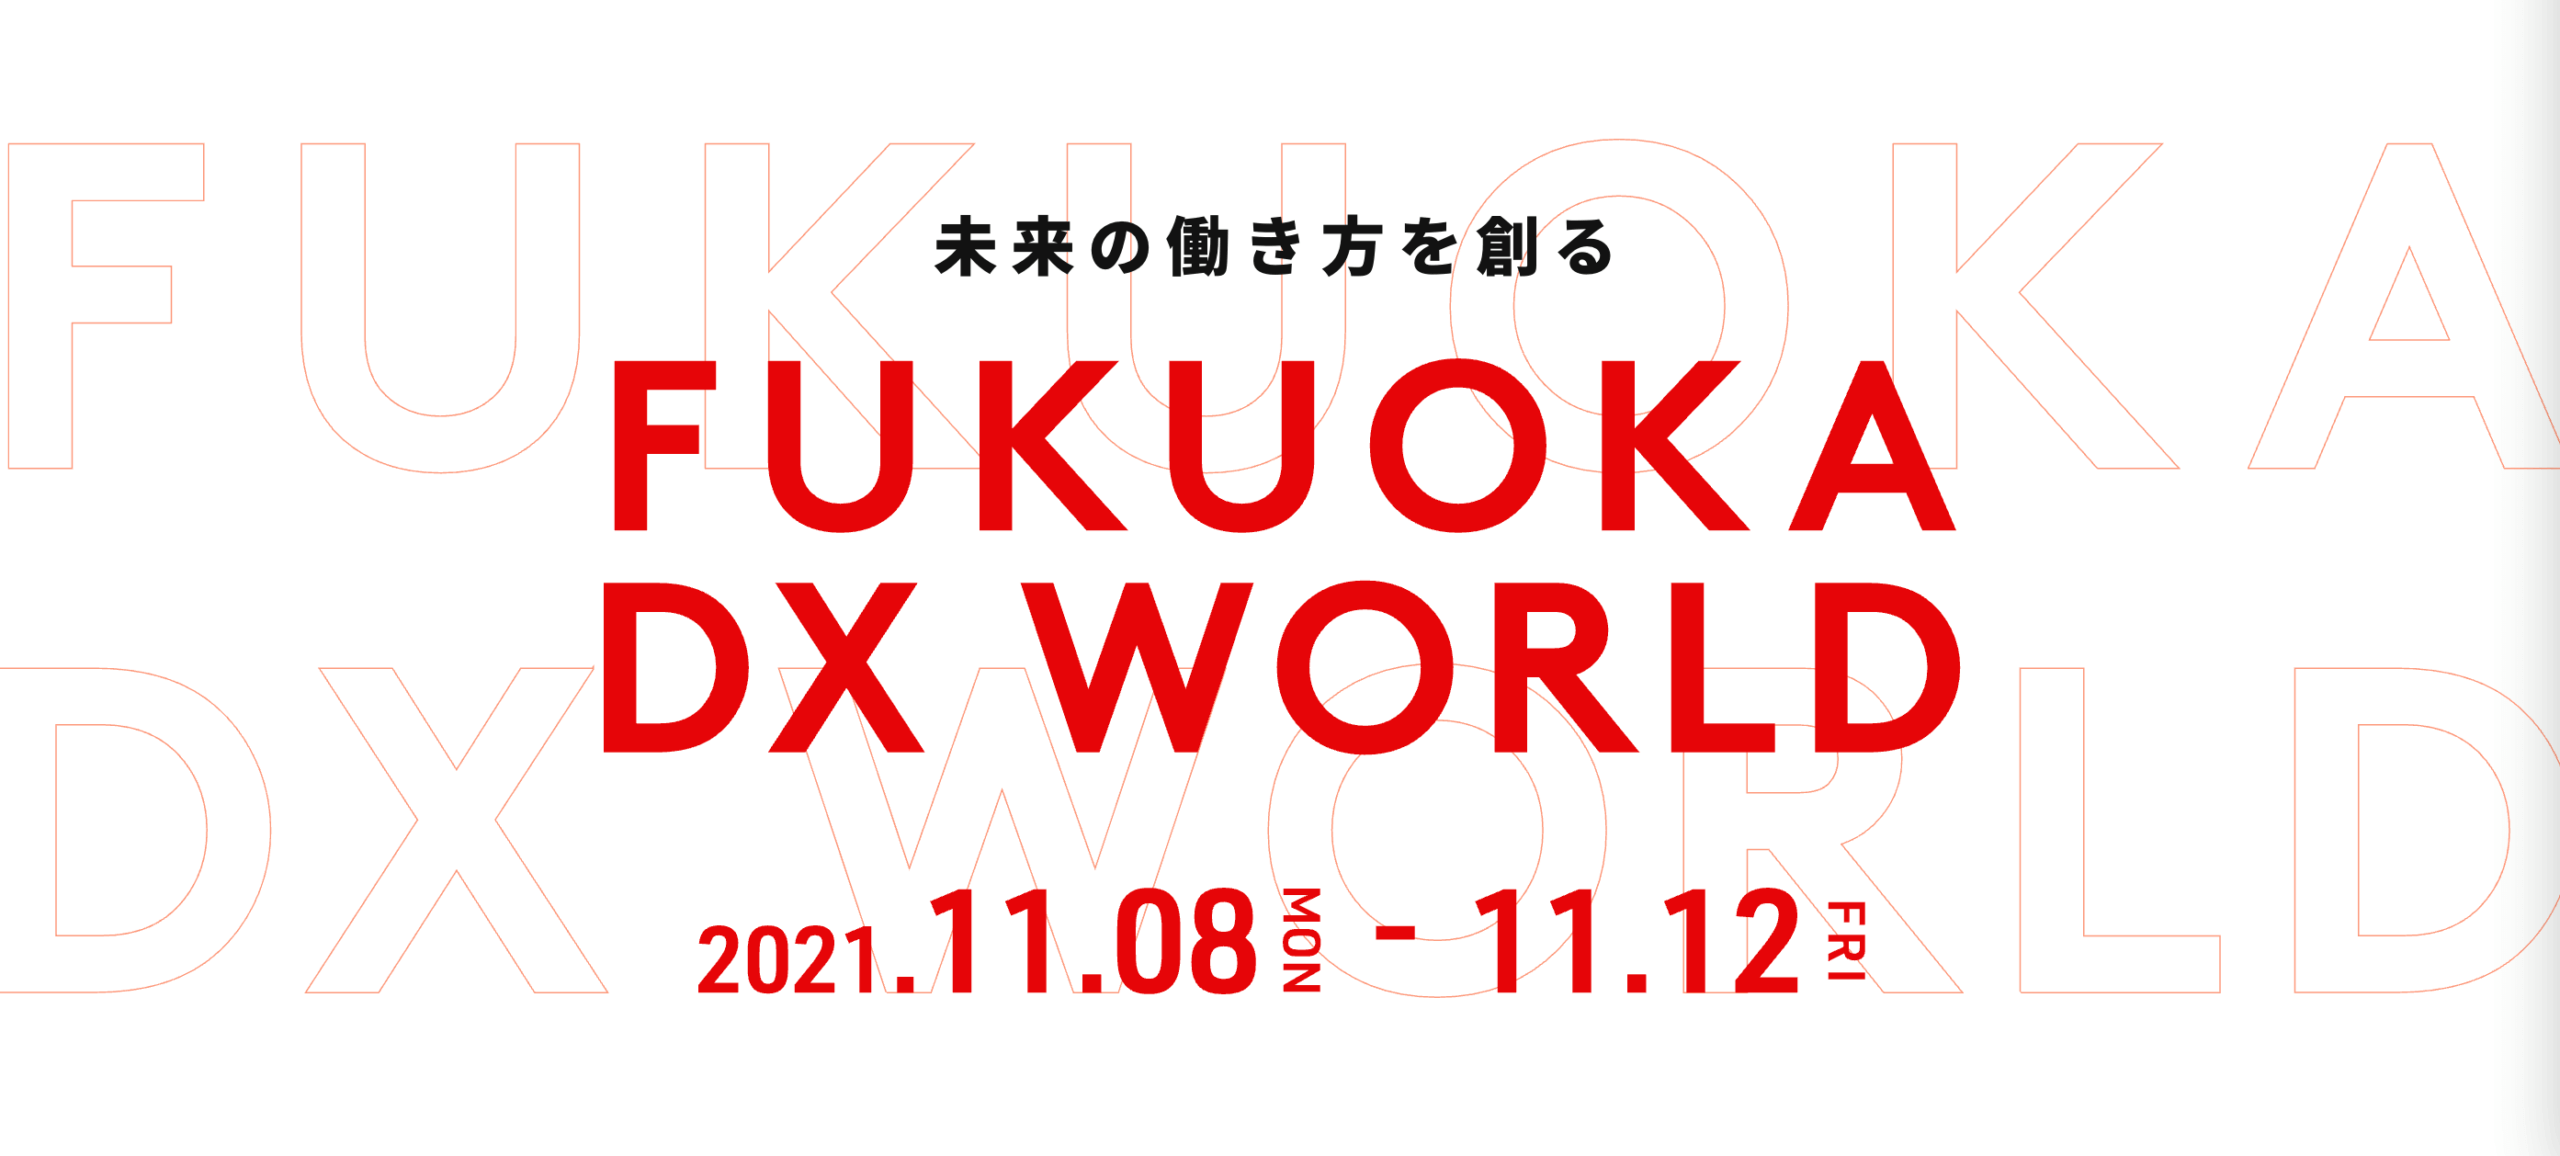 FUKUOKA DX WORLD